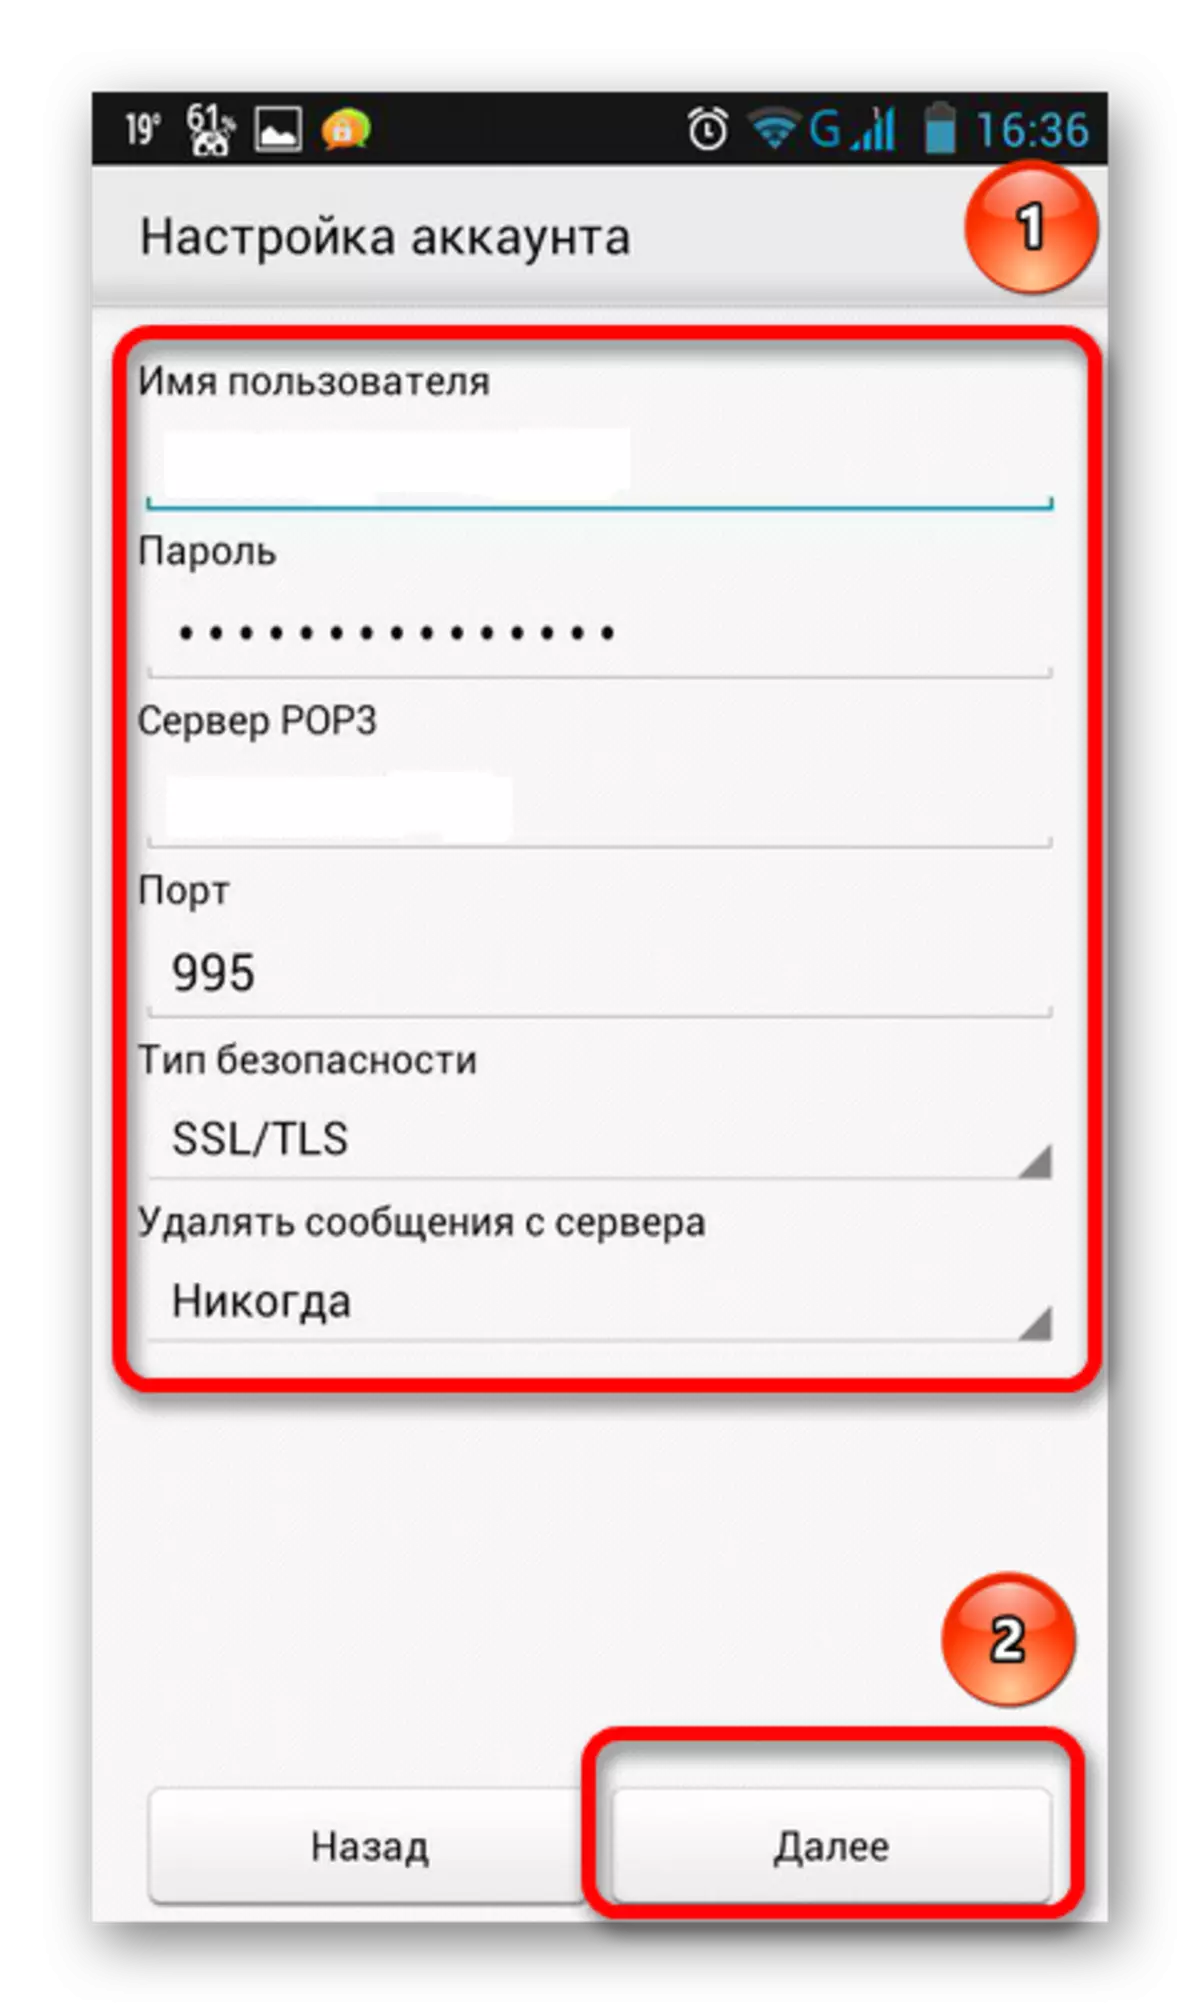 Wprowadź hasło i nazwę w poczcie Yandex